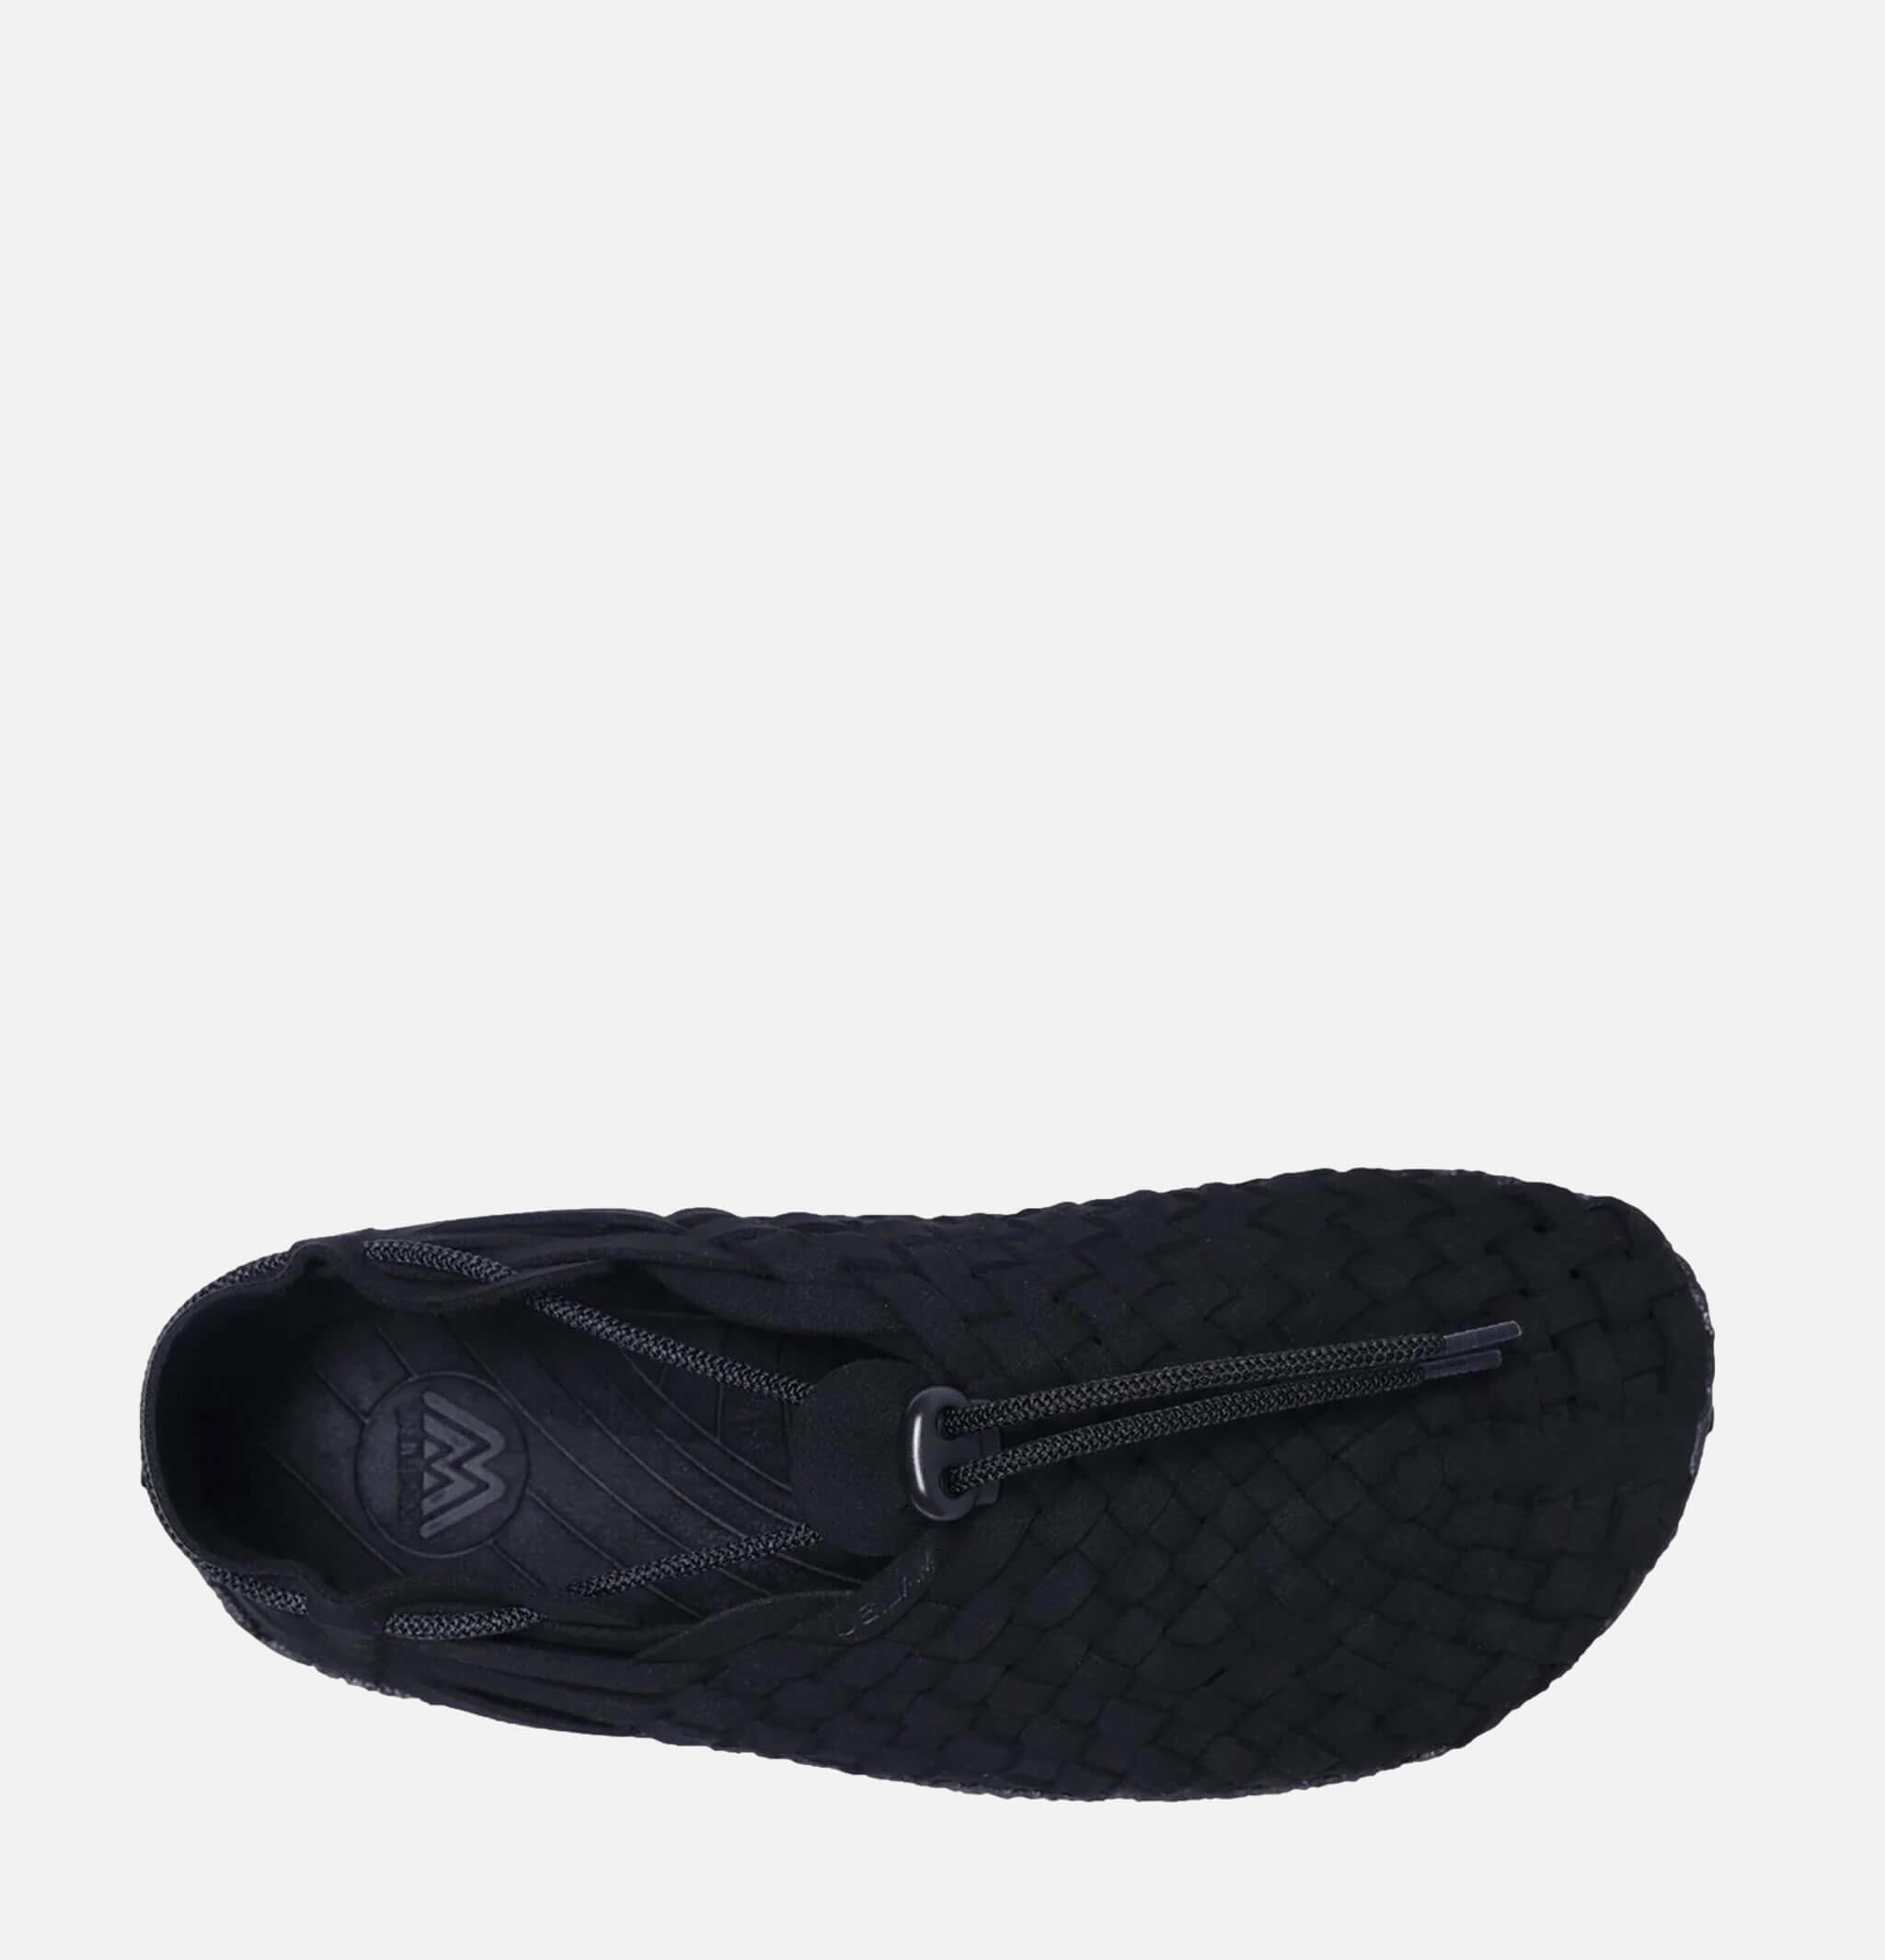 Sandals Latigo Noir